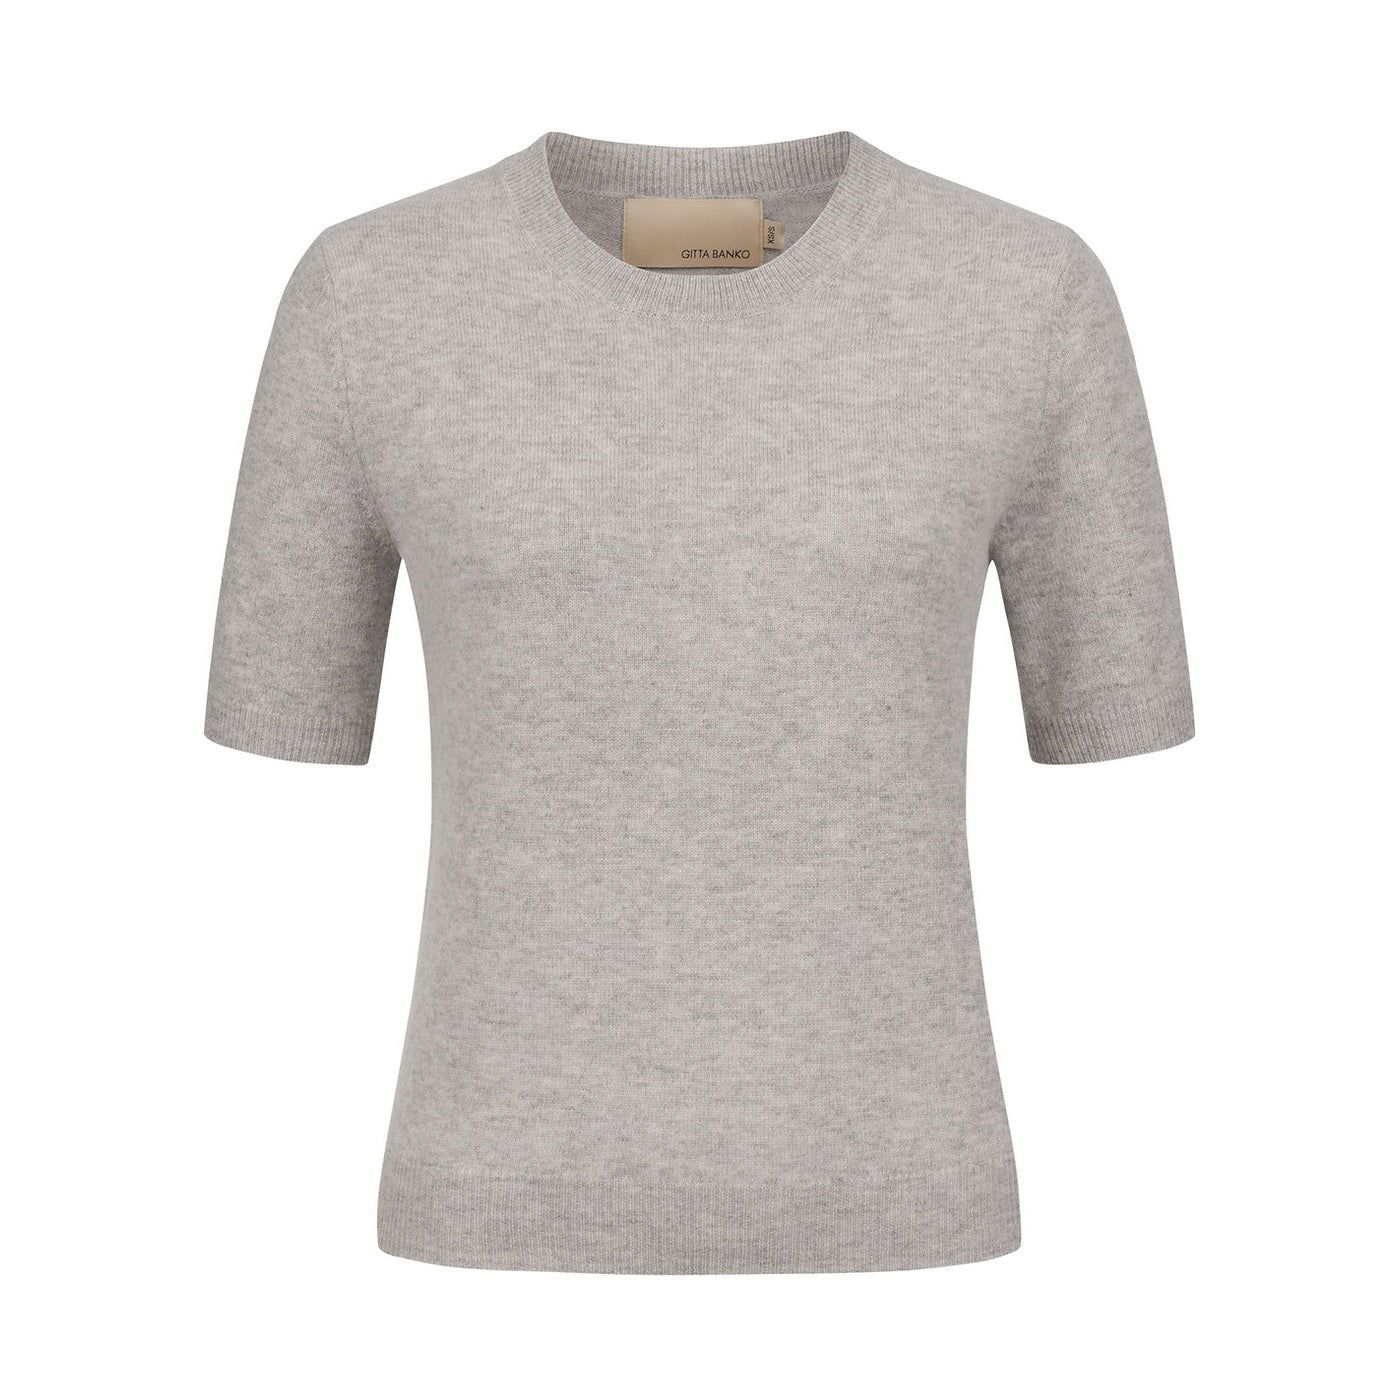 Gitta Banko Mode Shirt Thea in grau. Strickshirt in edler Merino Kaschmir Qualität von Gitta Banko the label online kaufen. T-Shirt mit schmalem Schnitt und tollem Tragekomfort aus der neuen Gitta Banko Kollektion.